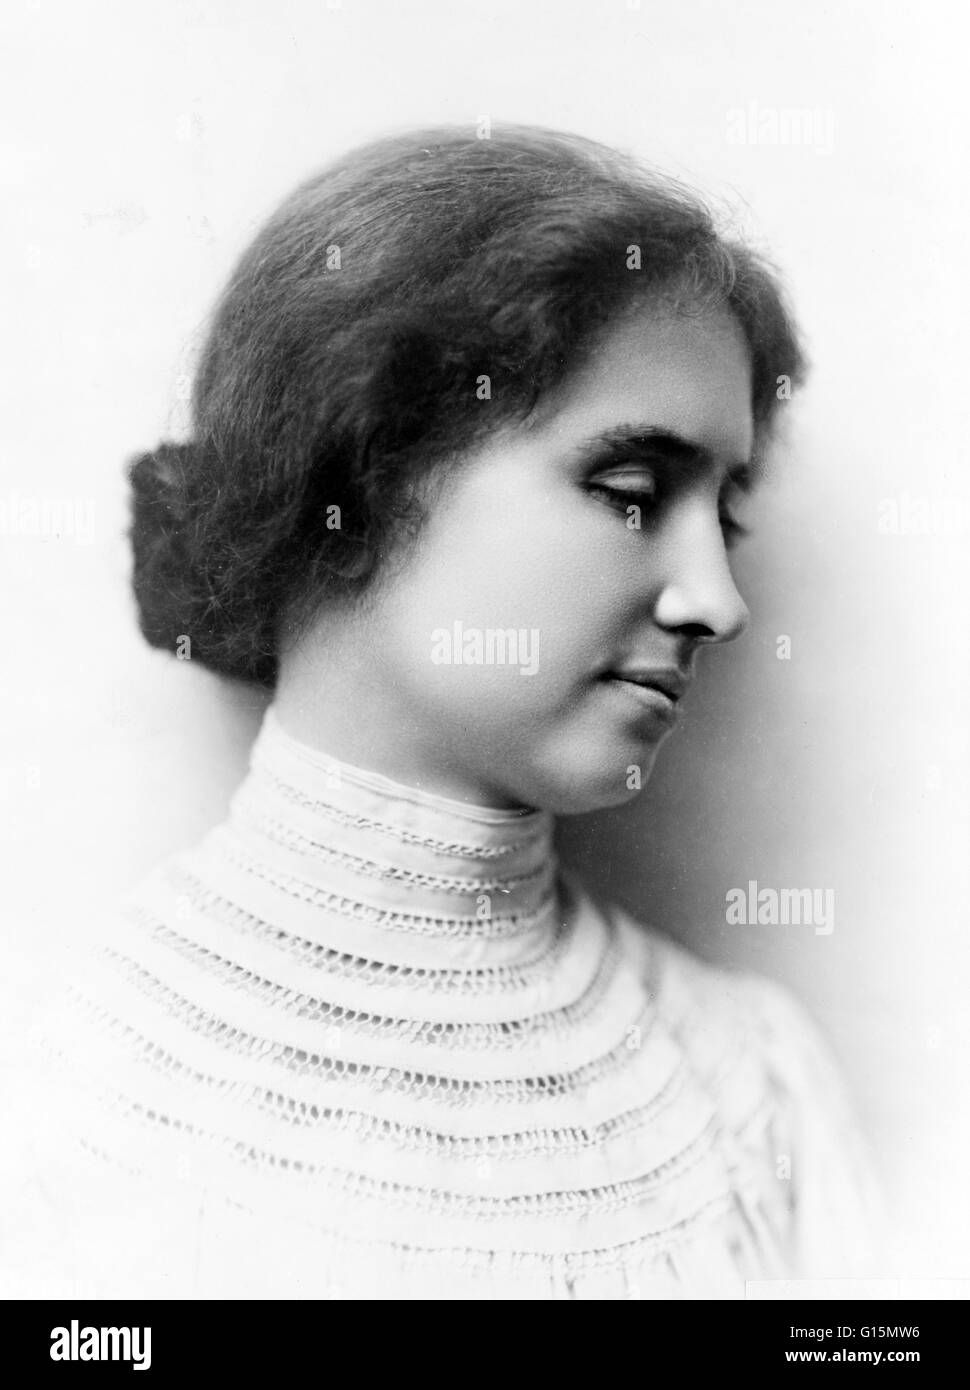 Keller, ca. 1904. Helen Adams Keller (27. Juni 1880 - 1. Juni 1968) war ein US-amerikanischer Autor, politischer Aktivist und Dozent. Sie war 19 Monate alt wenn sie beauftragt, eine Krankheit, die Scharlach hätte oder Hirnhautentzündung, die ihre Tauben zu verlassen und Stockfoto